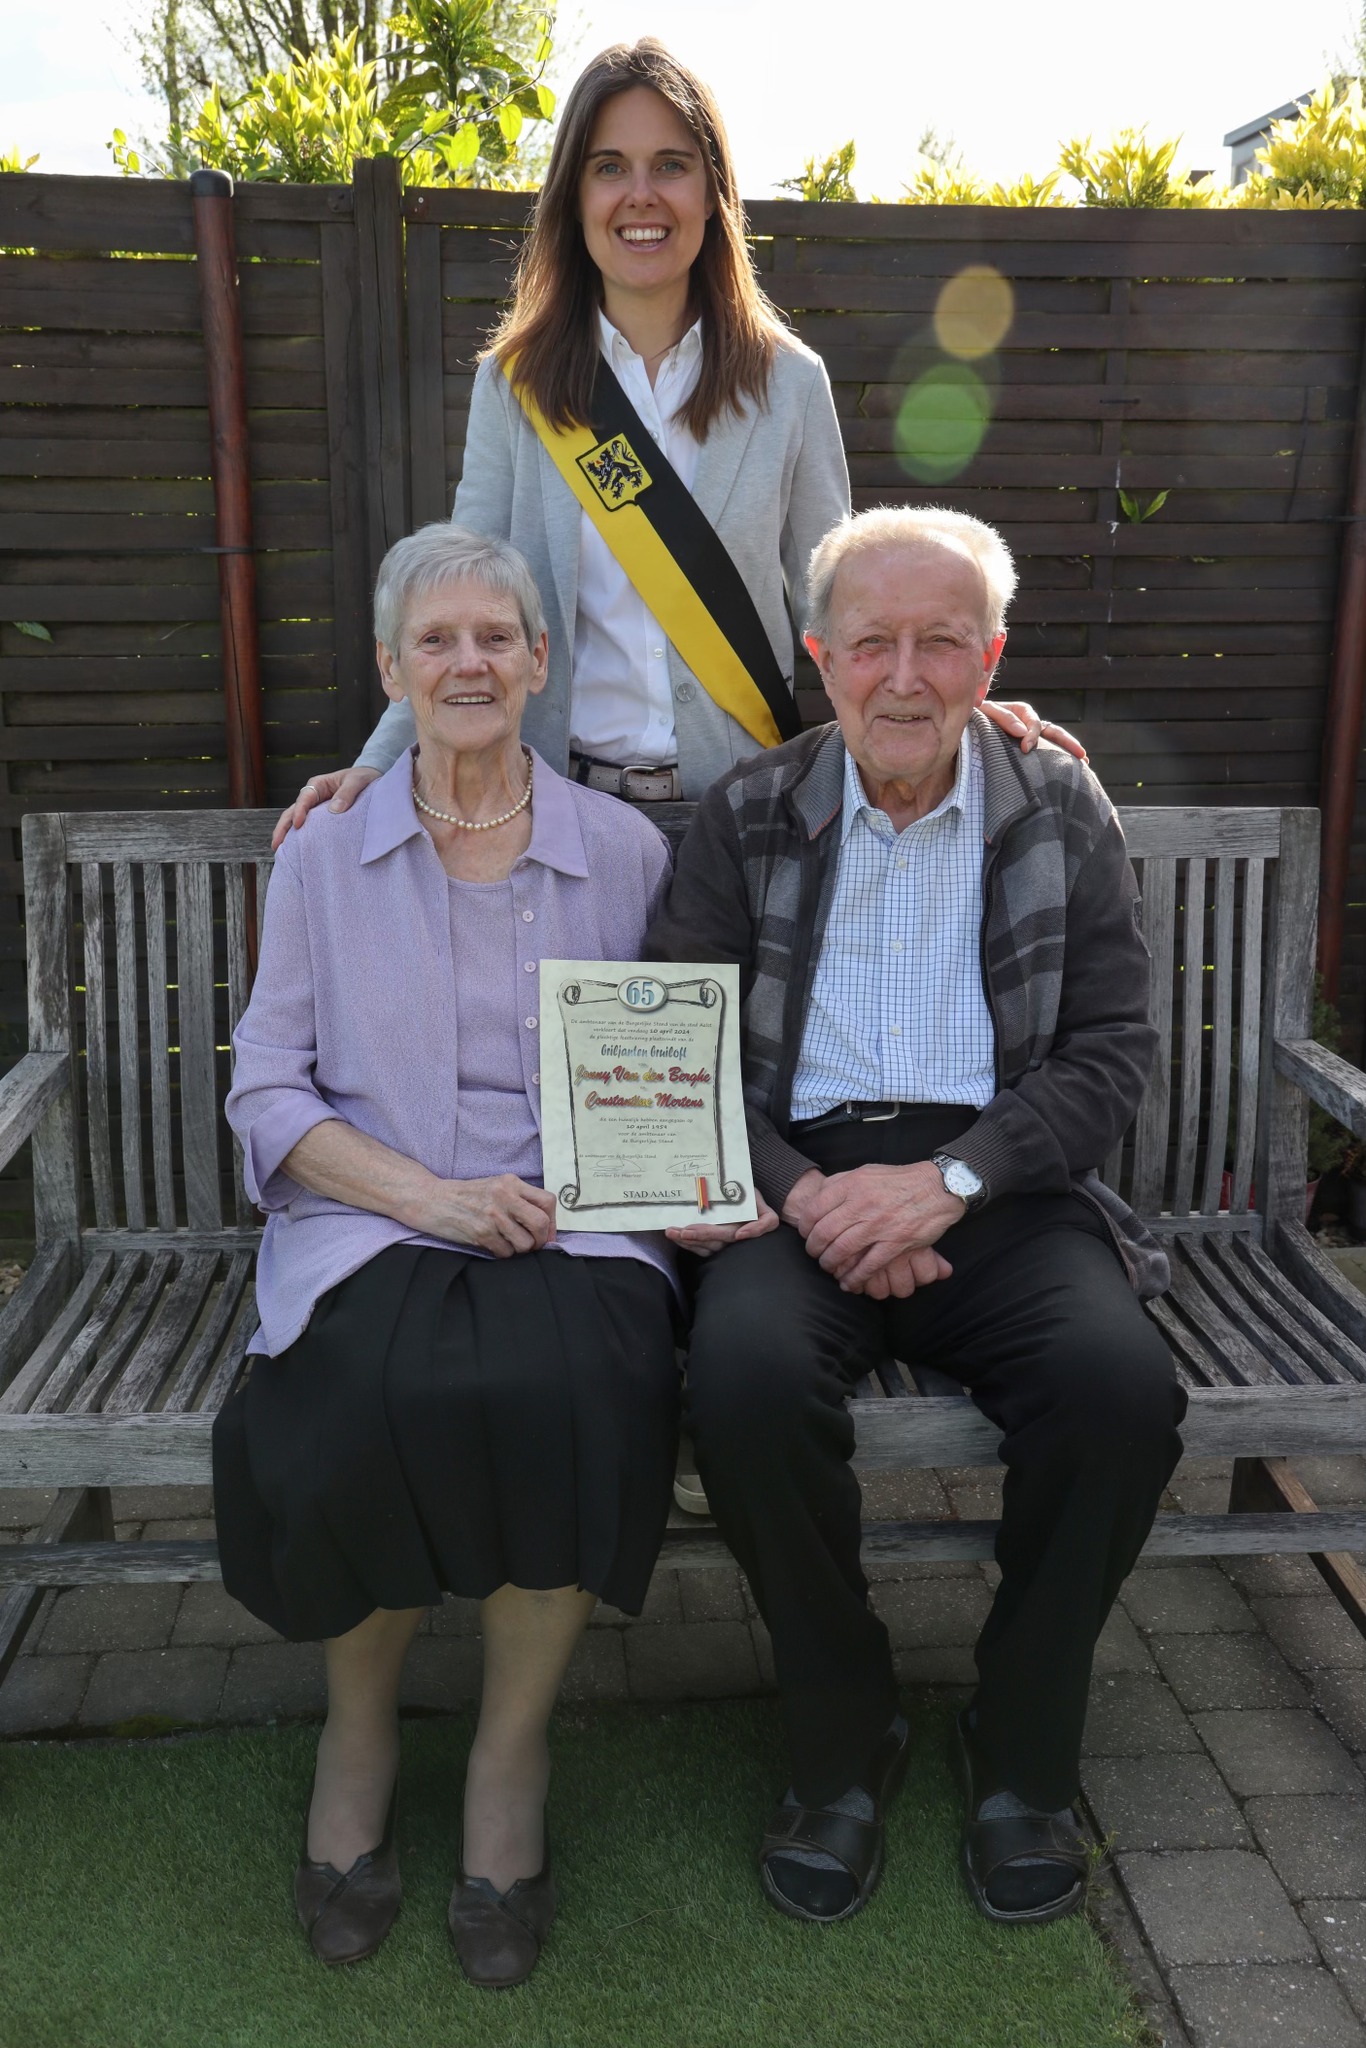 Op woensdag 10 april vierden Jonny Van den Berghe (87) en Constantine Mertens (85) in de Meidoornlaan in Terjoden hun briljanten huwelijksverjaardag. 